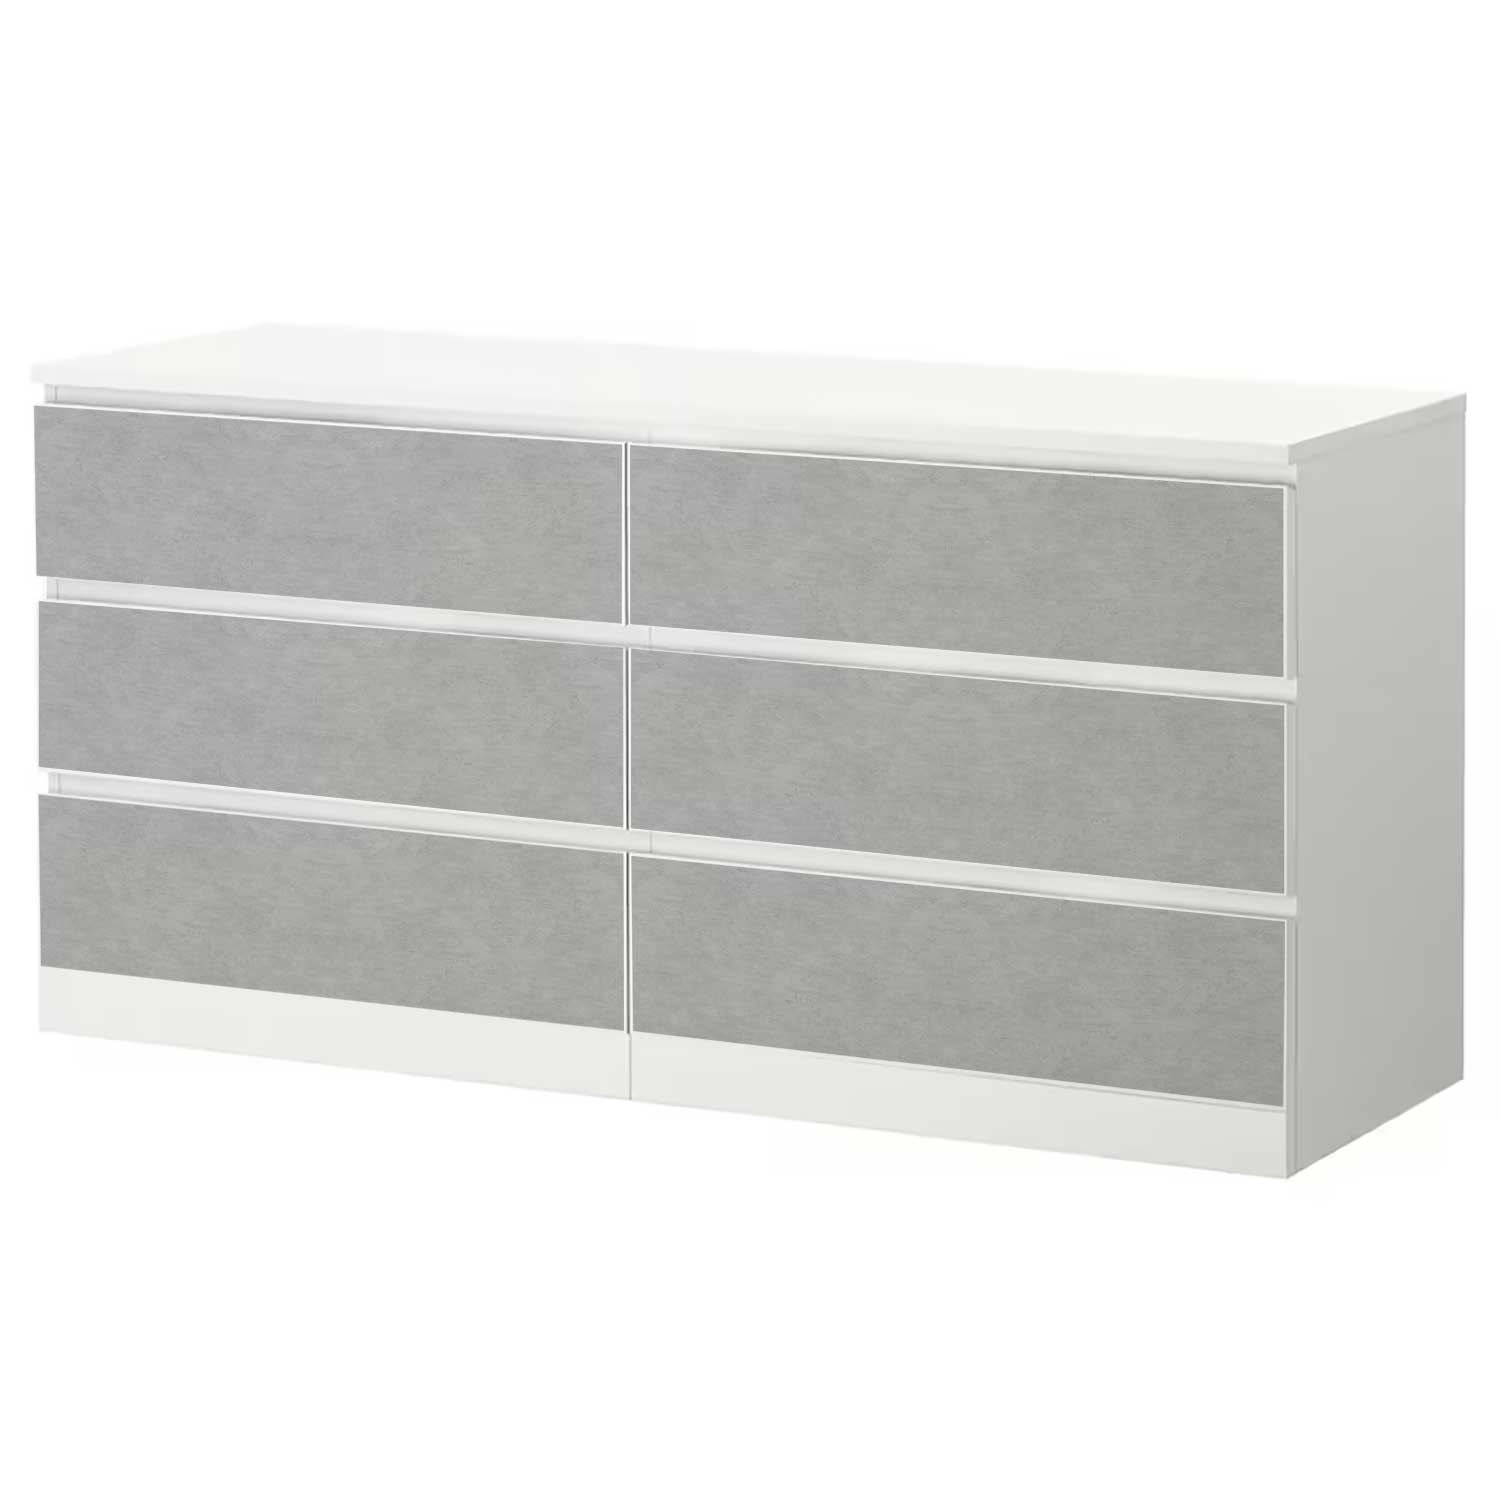 Möbelfolie für IKEA MALM Kommode 6-Schubladen 160x78 cm 'Light Concrete'